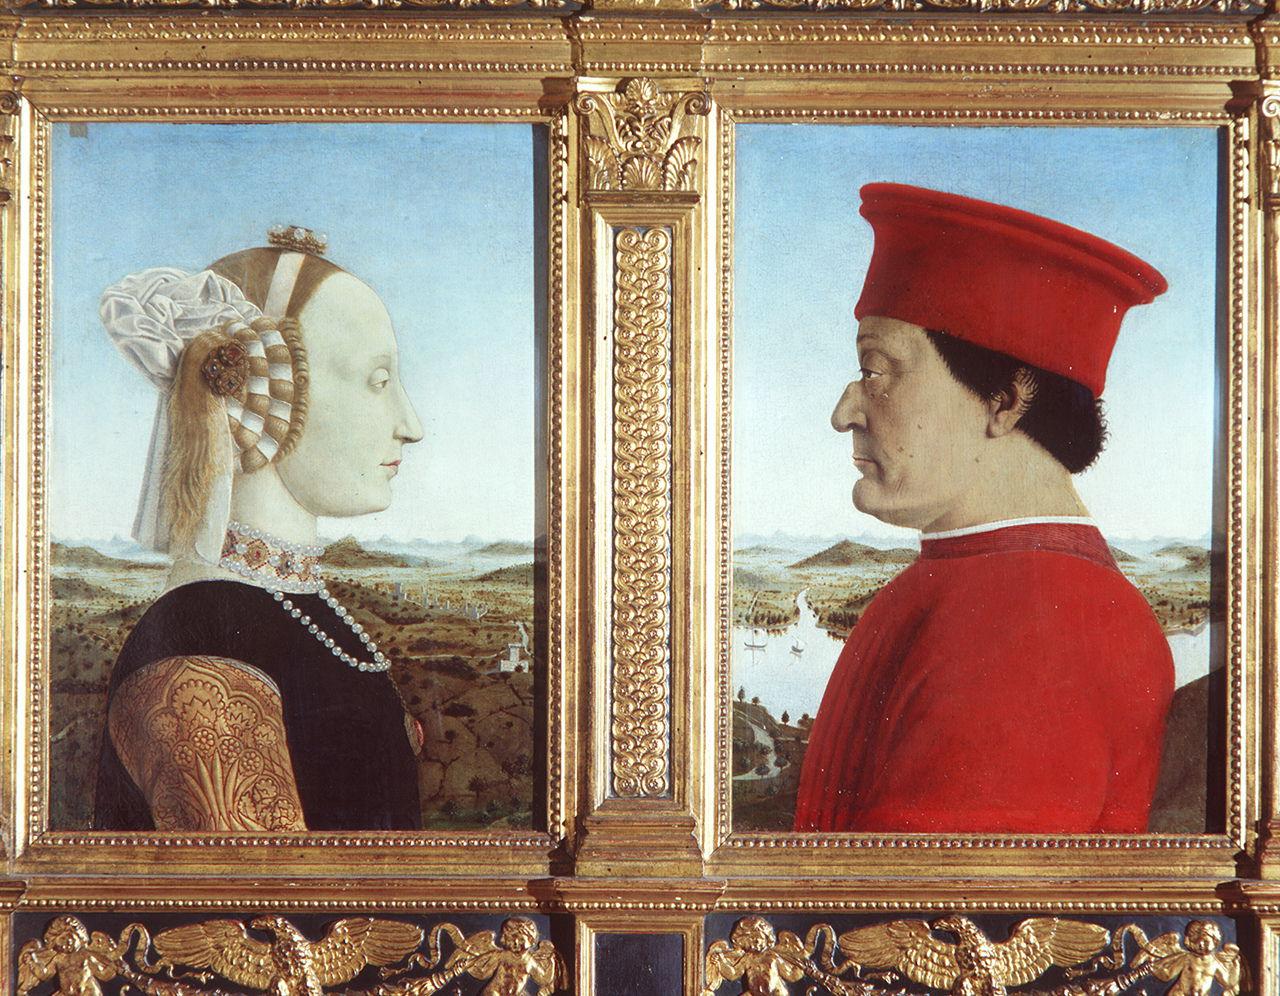 ritratti di Federico da Montefeltro e Battista Sforza e loro trionfi (dittico) di Piero della Francesca (sec. XV)